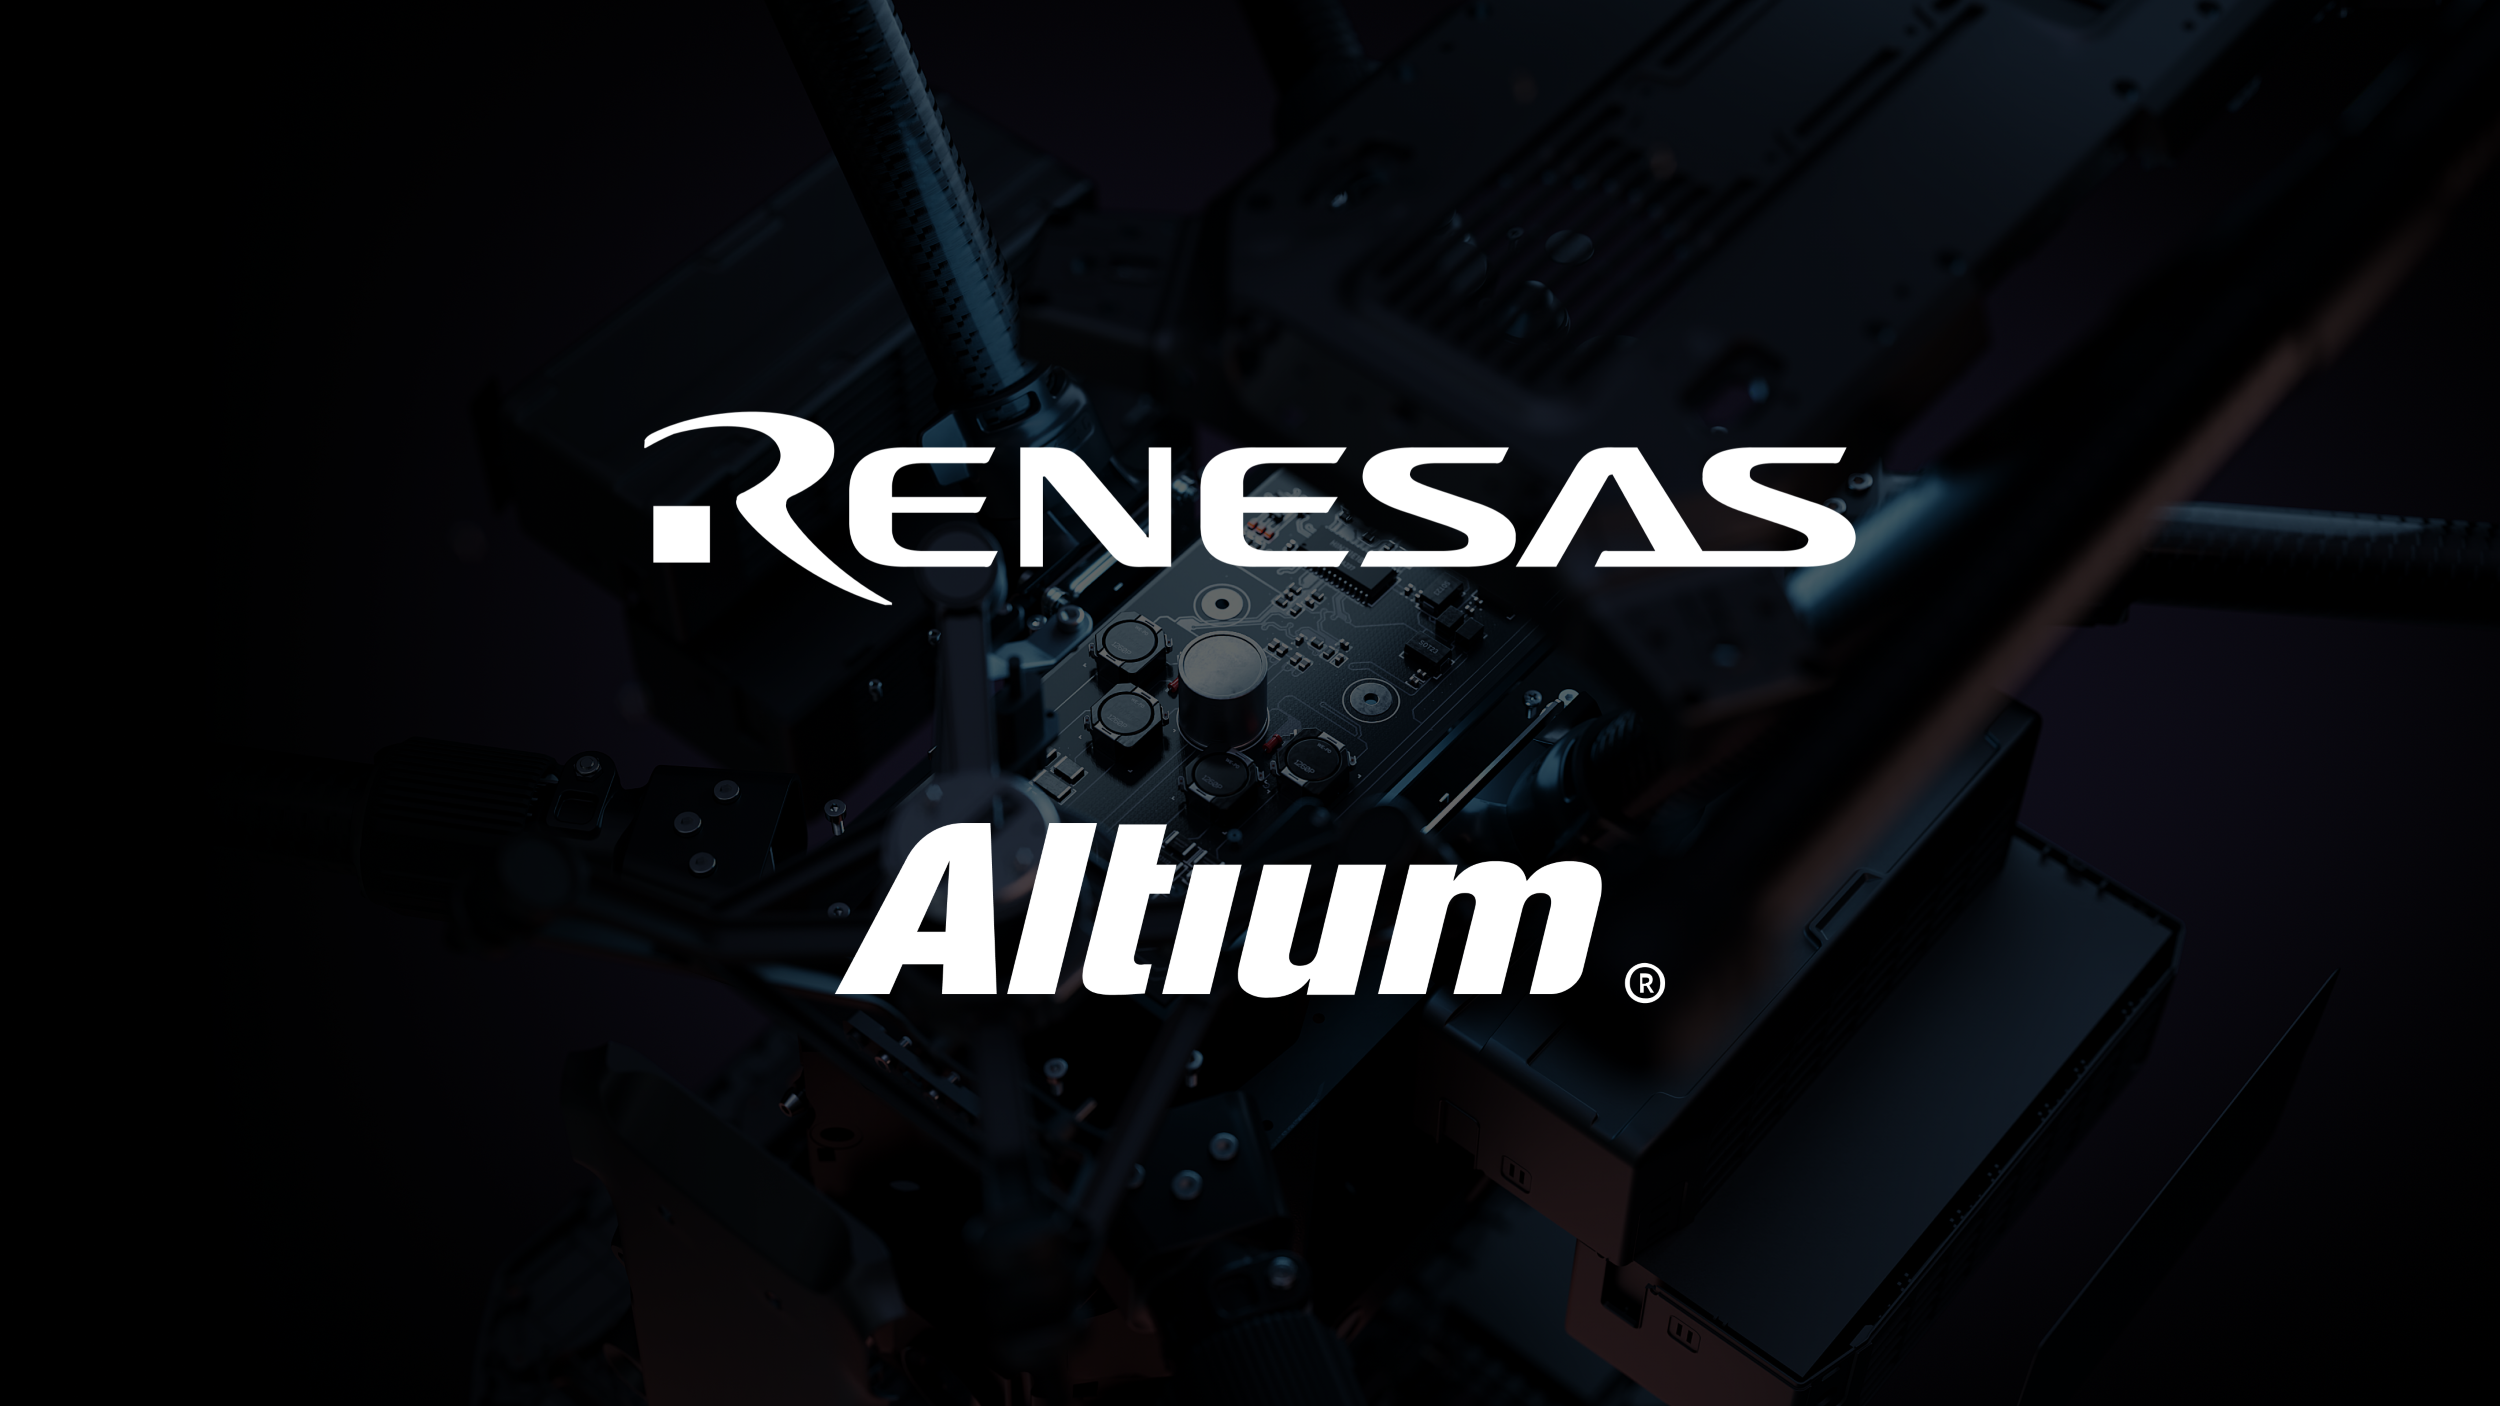 Altium and Renesas Announcement